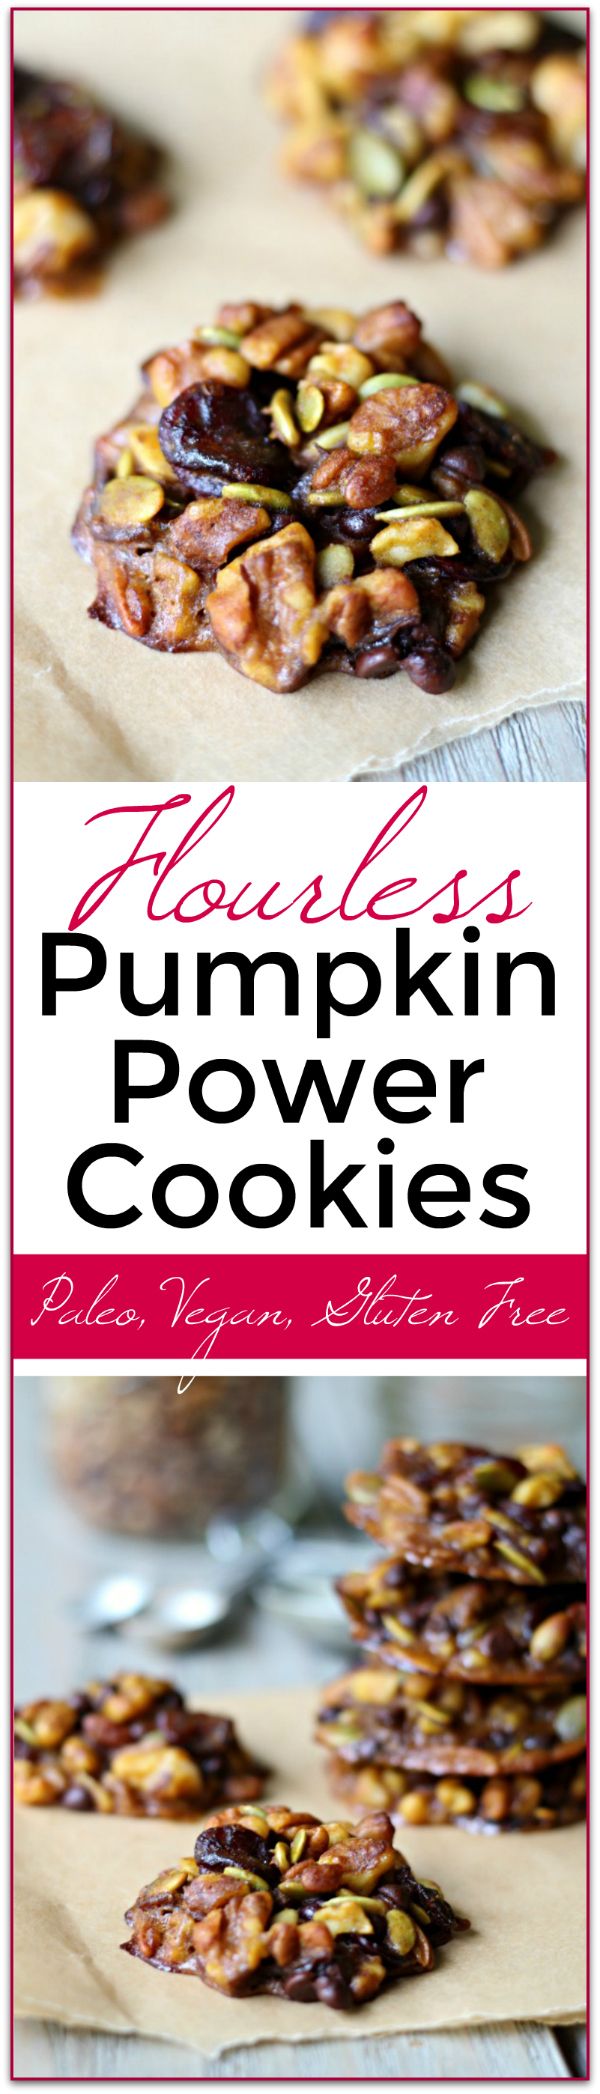 Pumpkin Power Cookies - Flourless! (Paleo, Gluten Free, Vegan